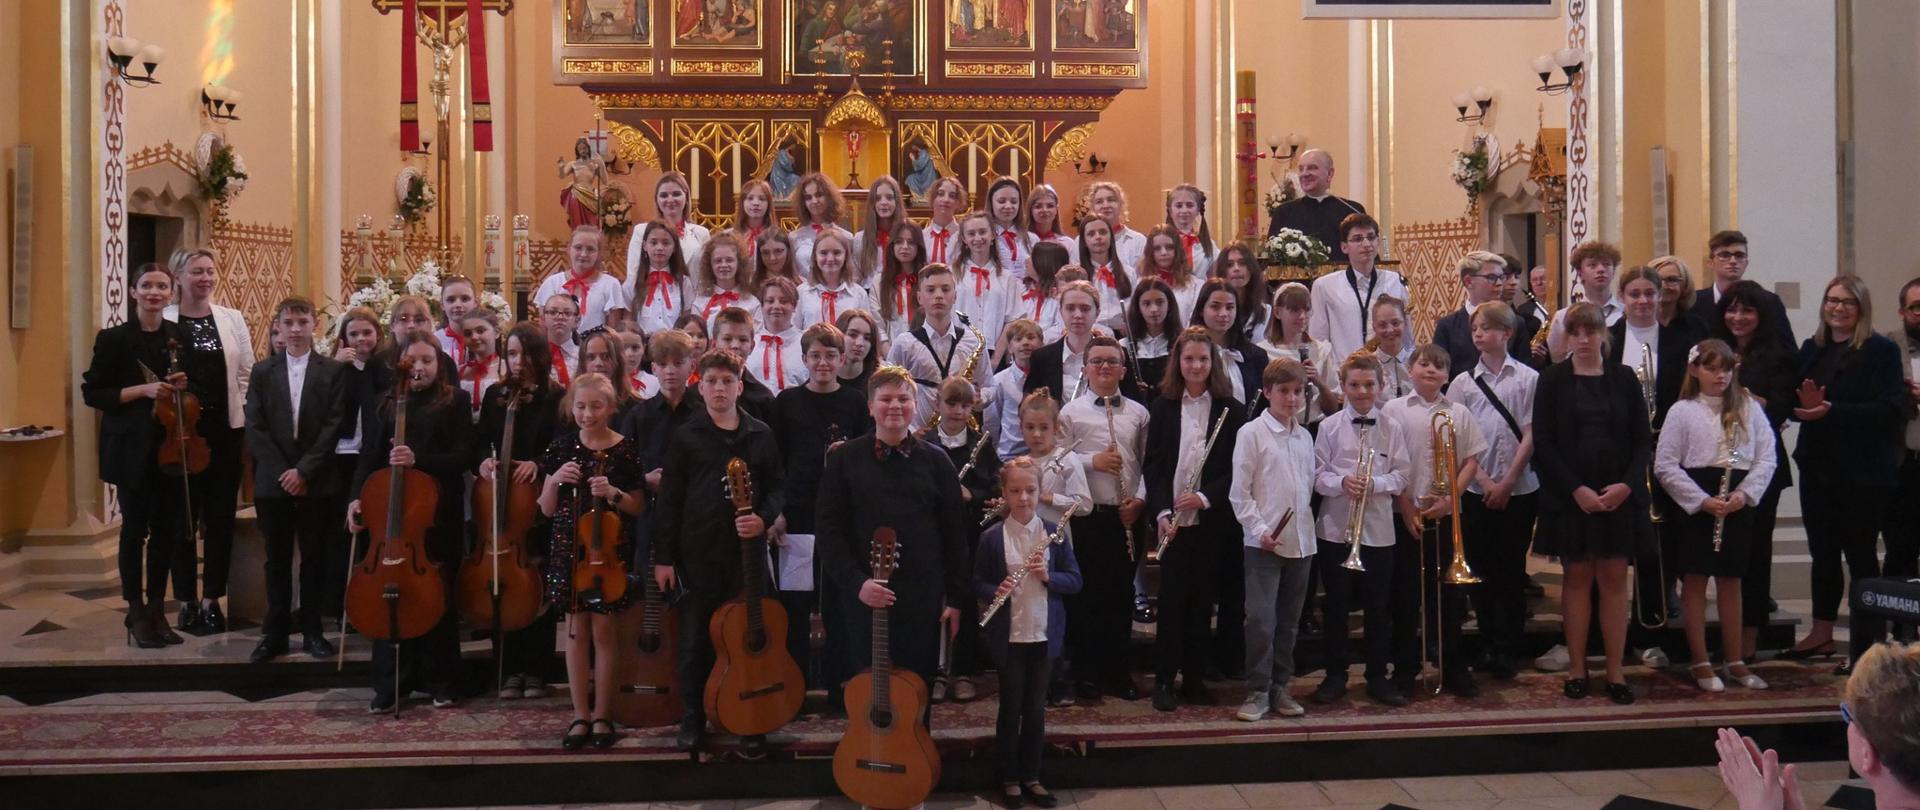 Duża grupa uczniów stoi przed prezbiterium Kościoła WNMP w Wodzisławiu Śląskim, w rękach trzymają instrumenty.